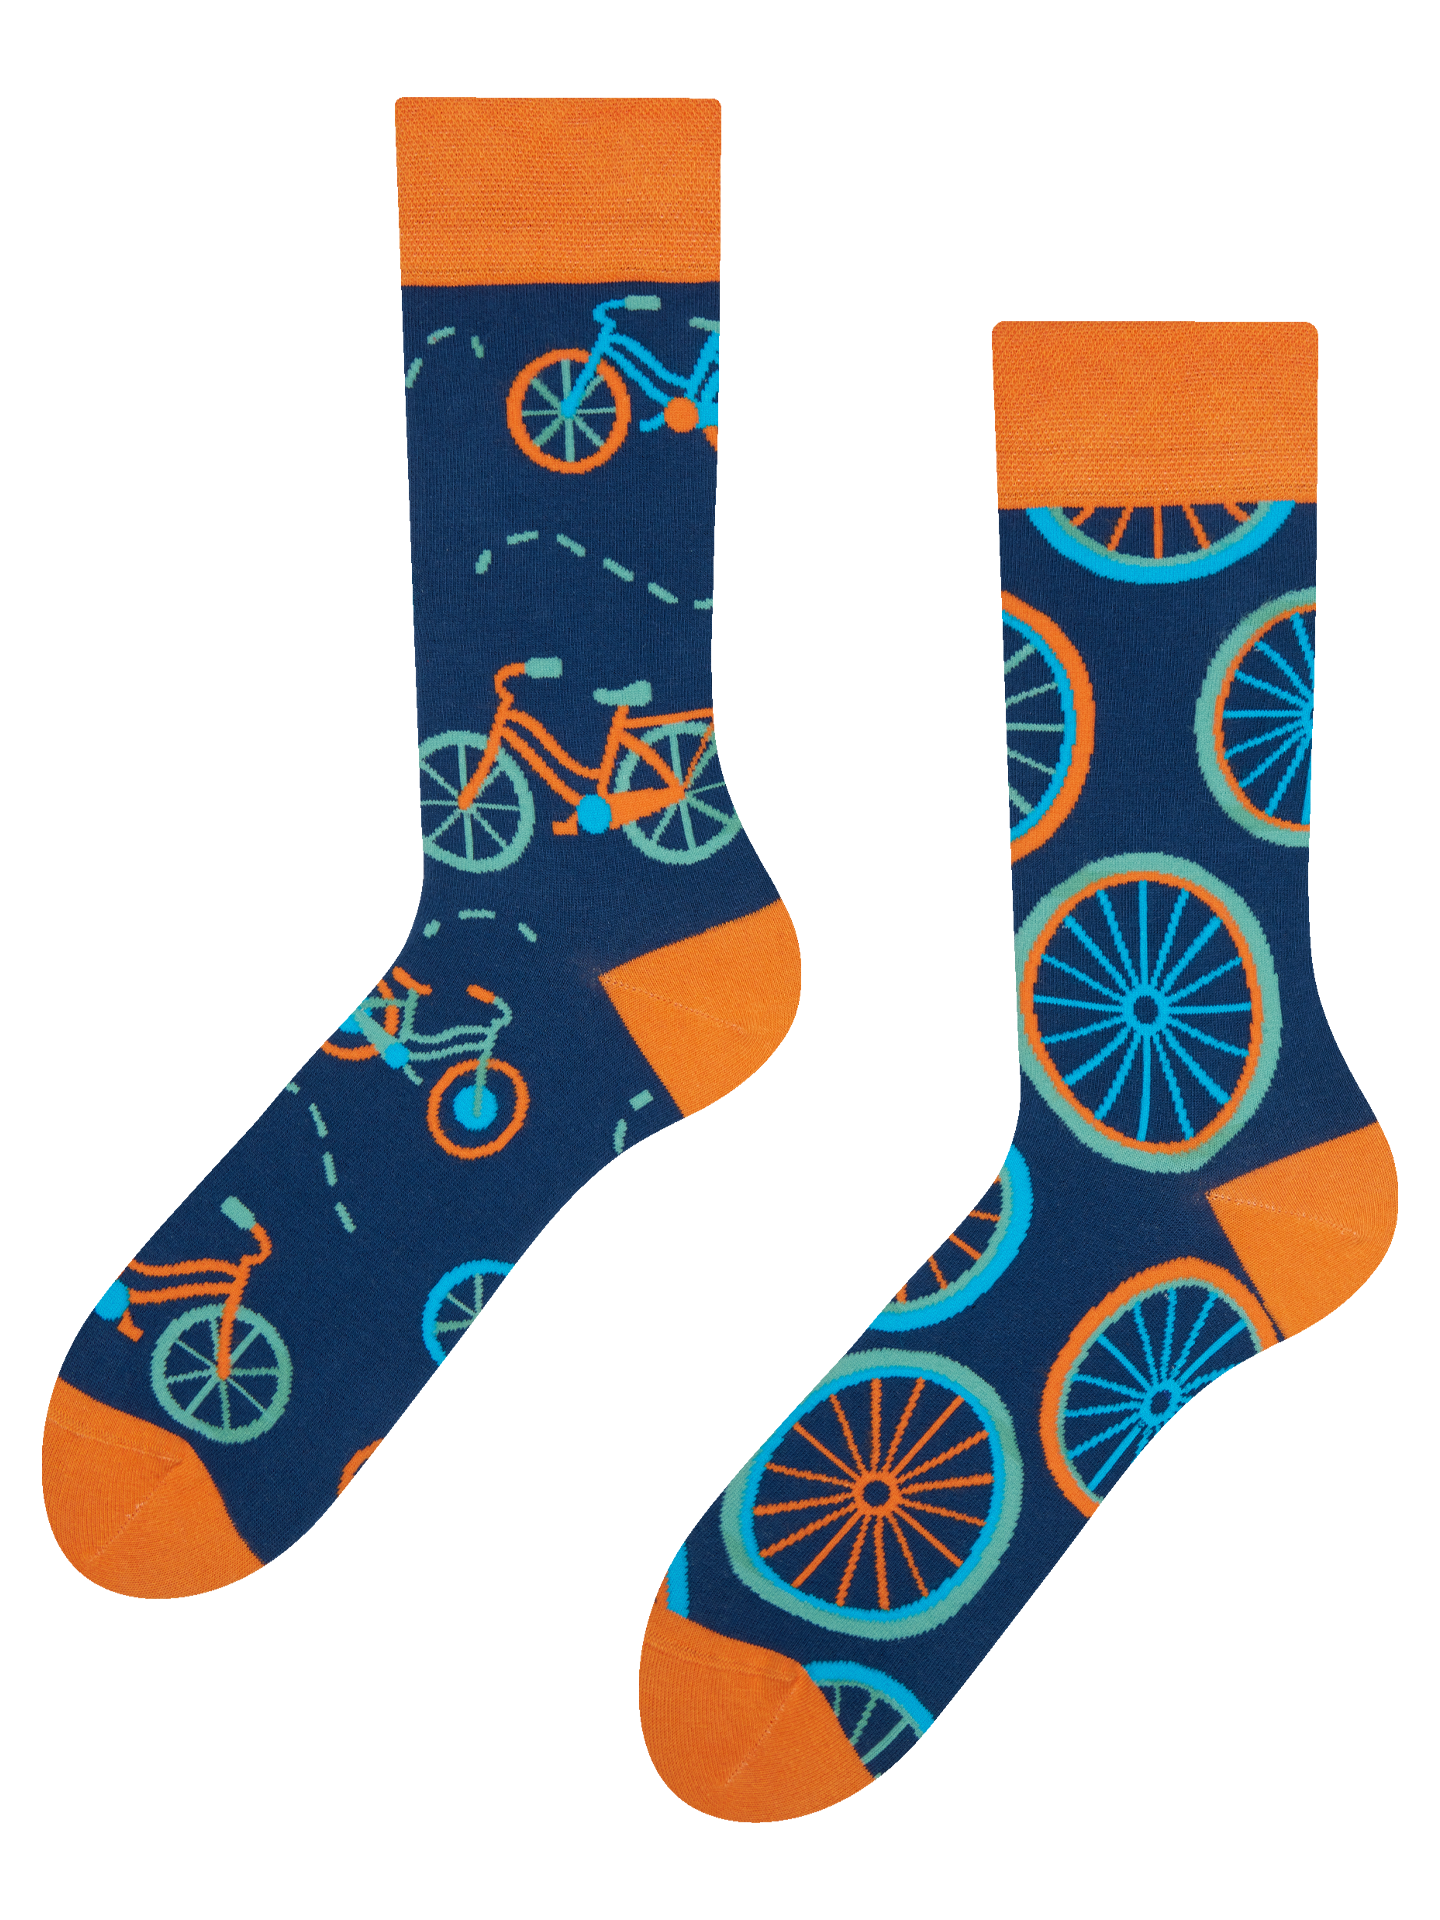 Regular Socks Orange Bicycle